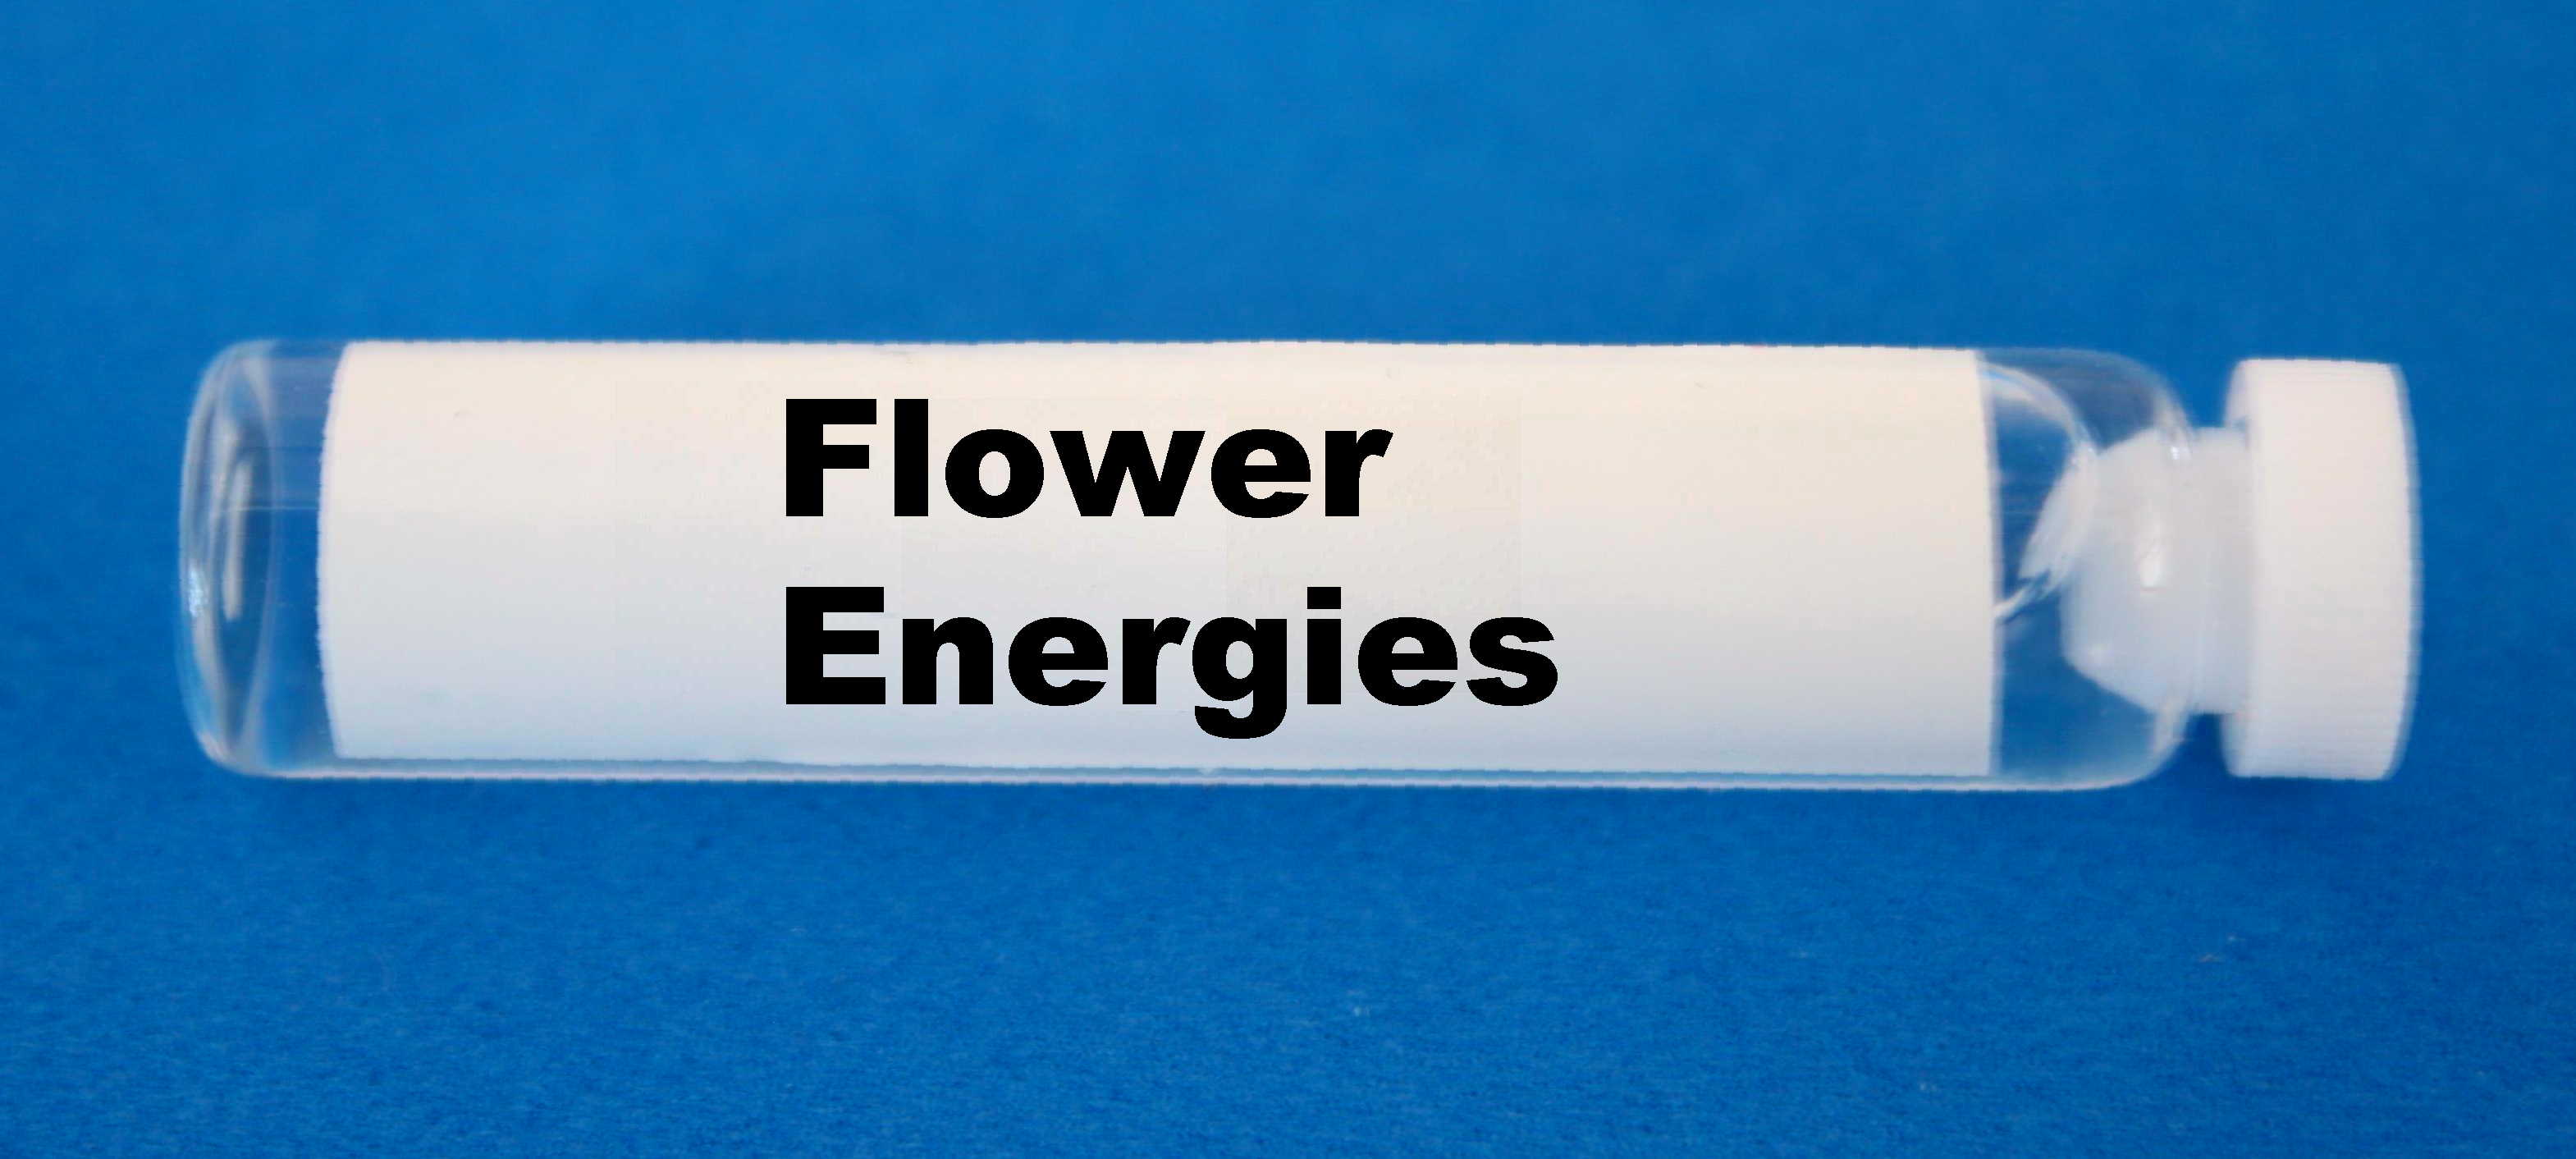 Flower Energies vial